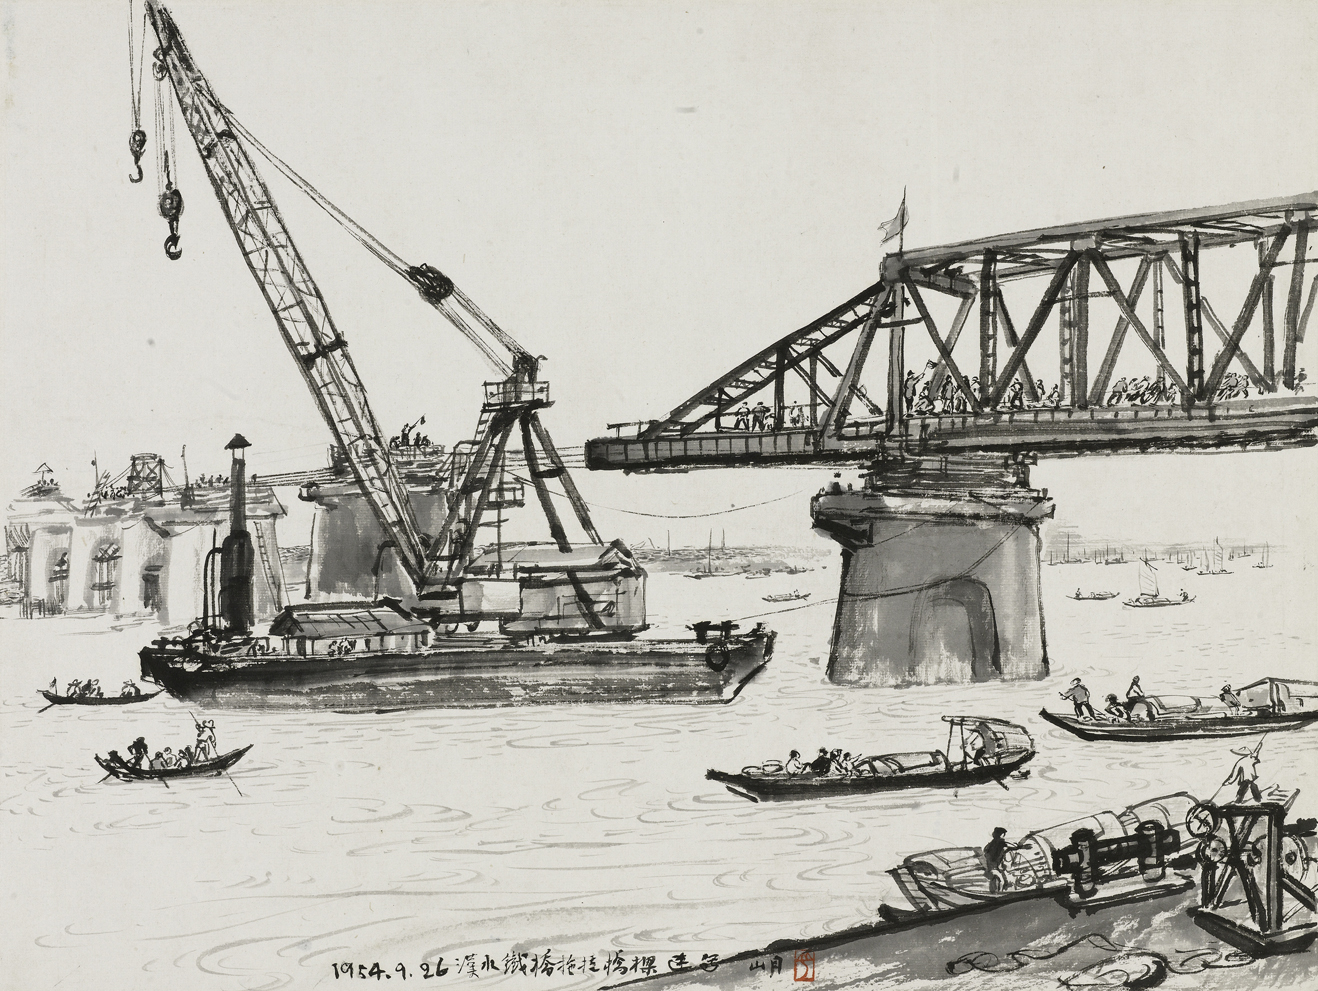 关山月 《汉水大桥在建设中》 中国画 32.7×43.5 cm 1954年 关山月美术馆藏